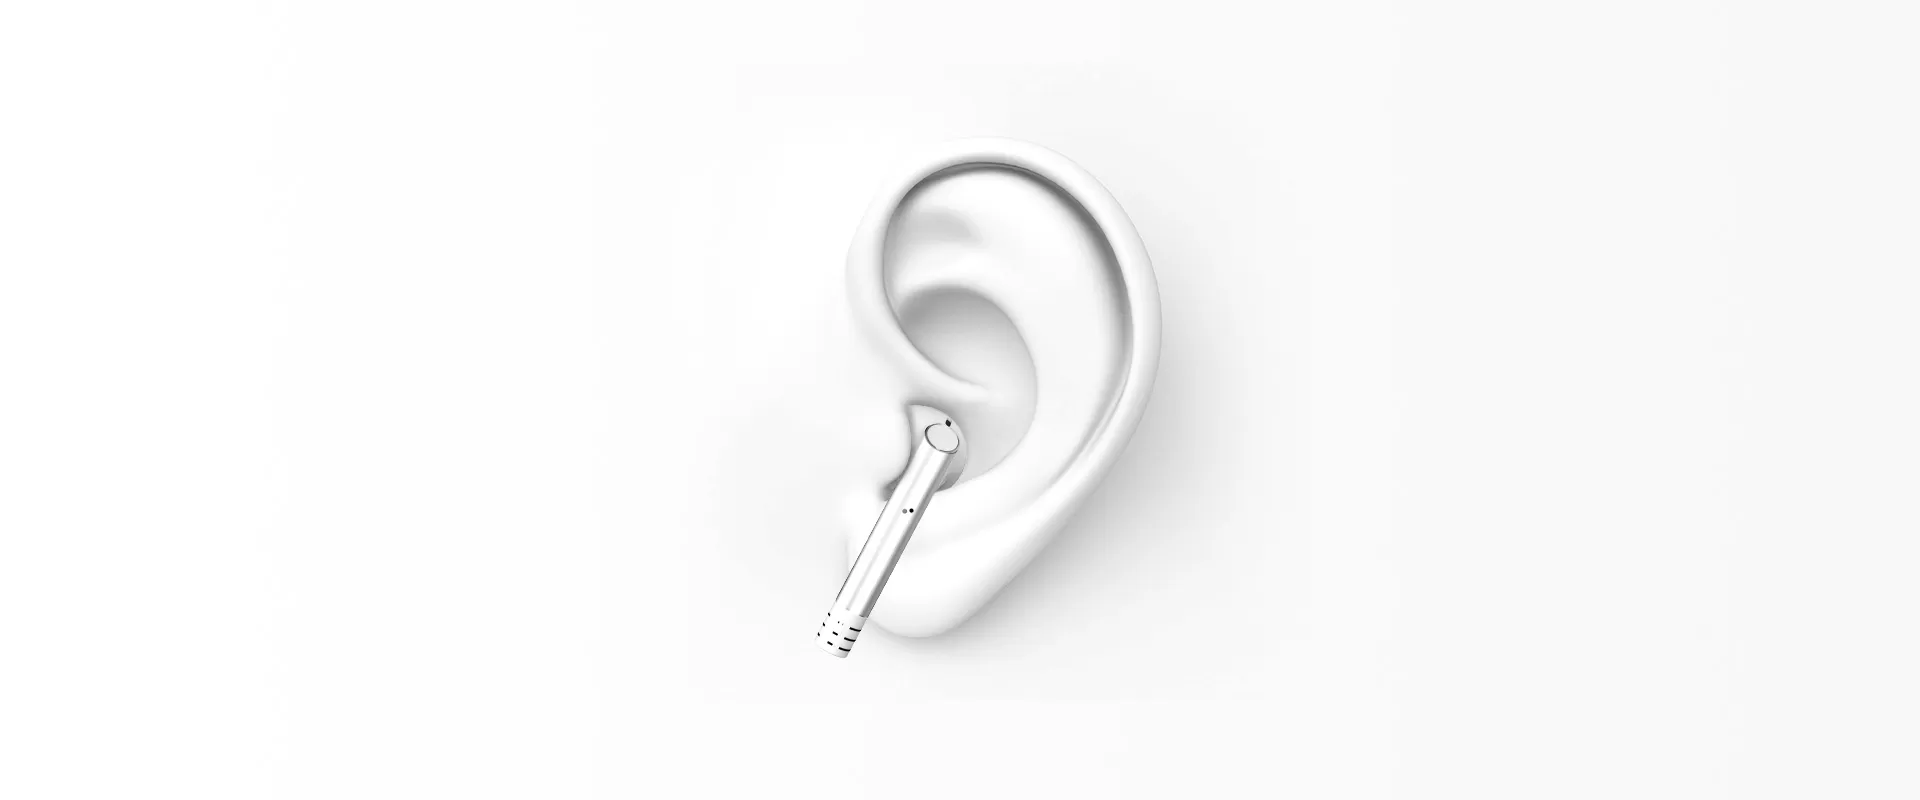 Half-in-ear Design